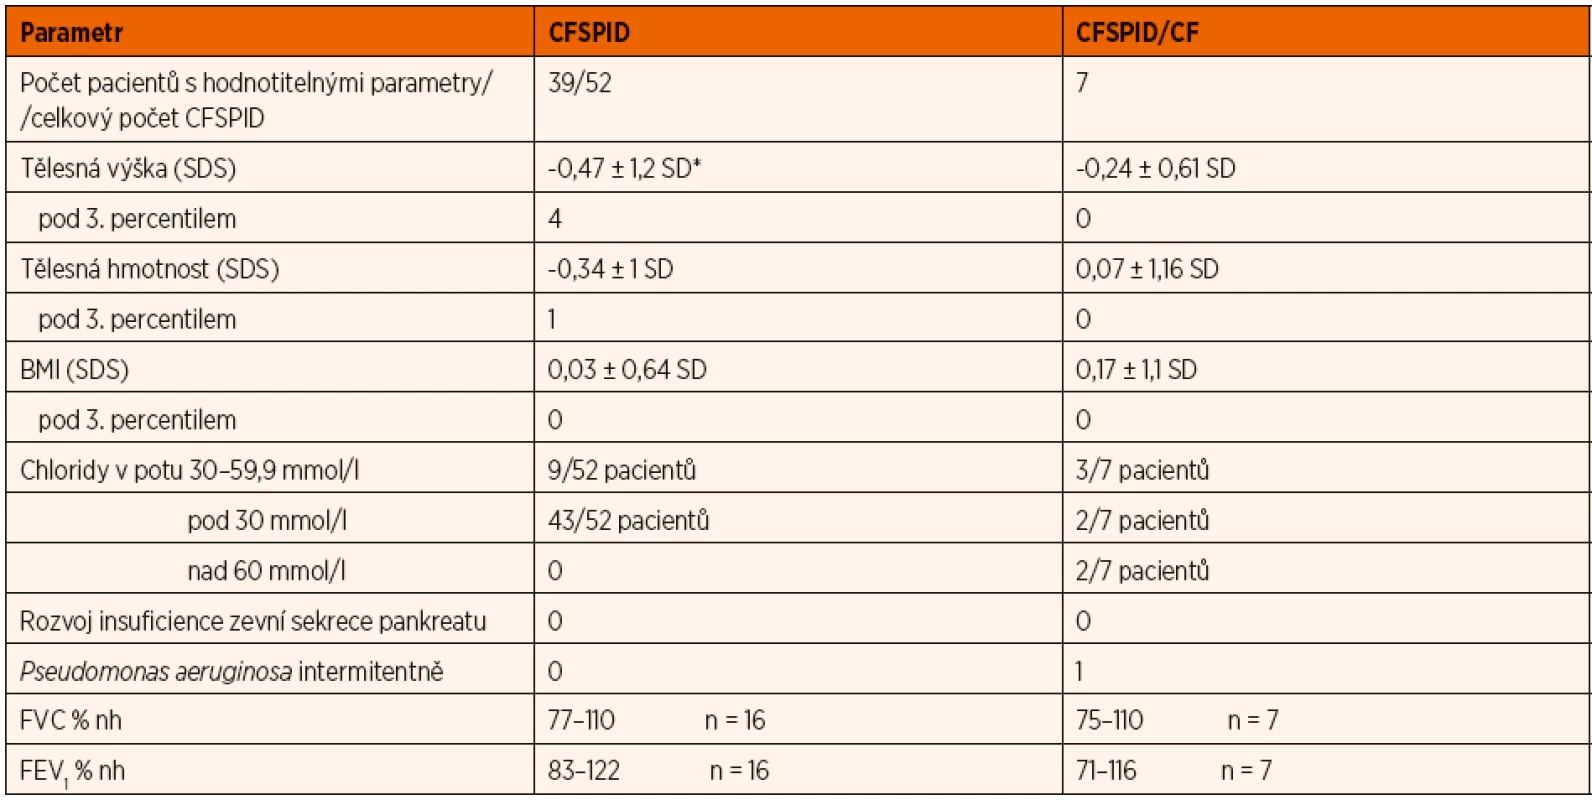 Charakteristika pacientů sledovaných s CF SPID a 7 pacientů, kteří byli přeřazeni do CF.